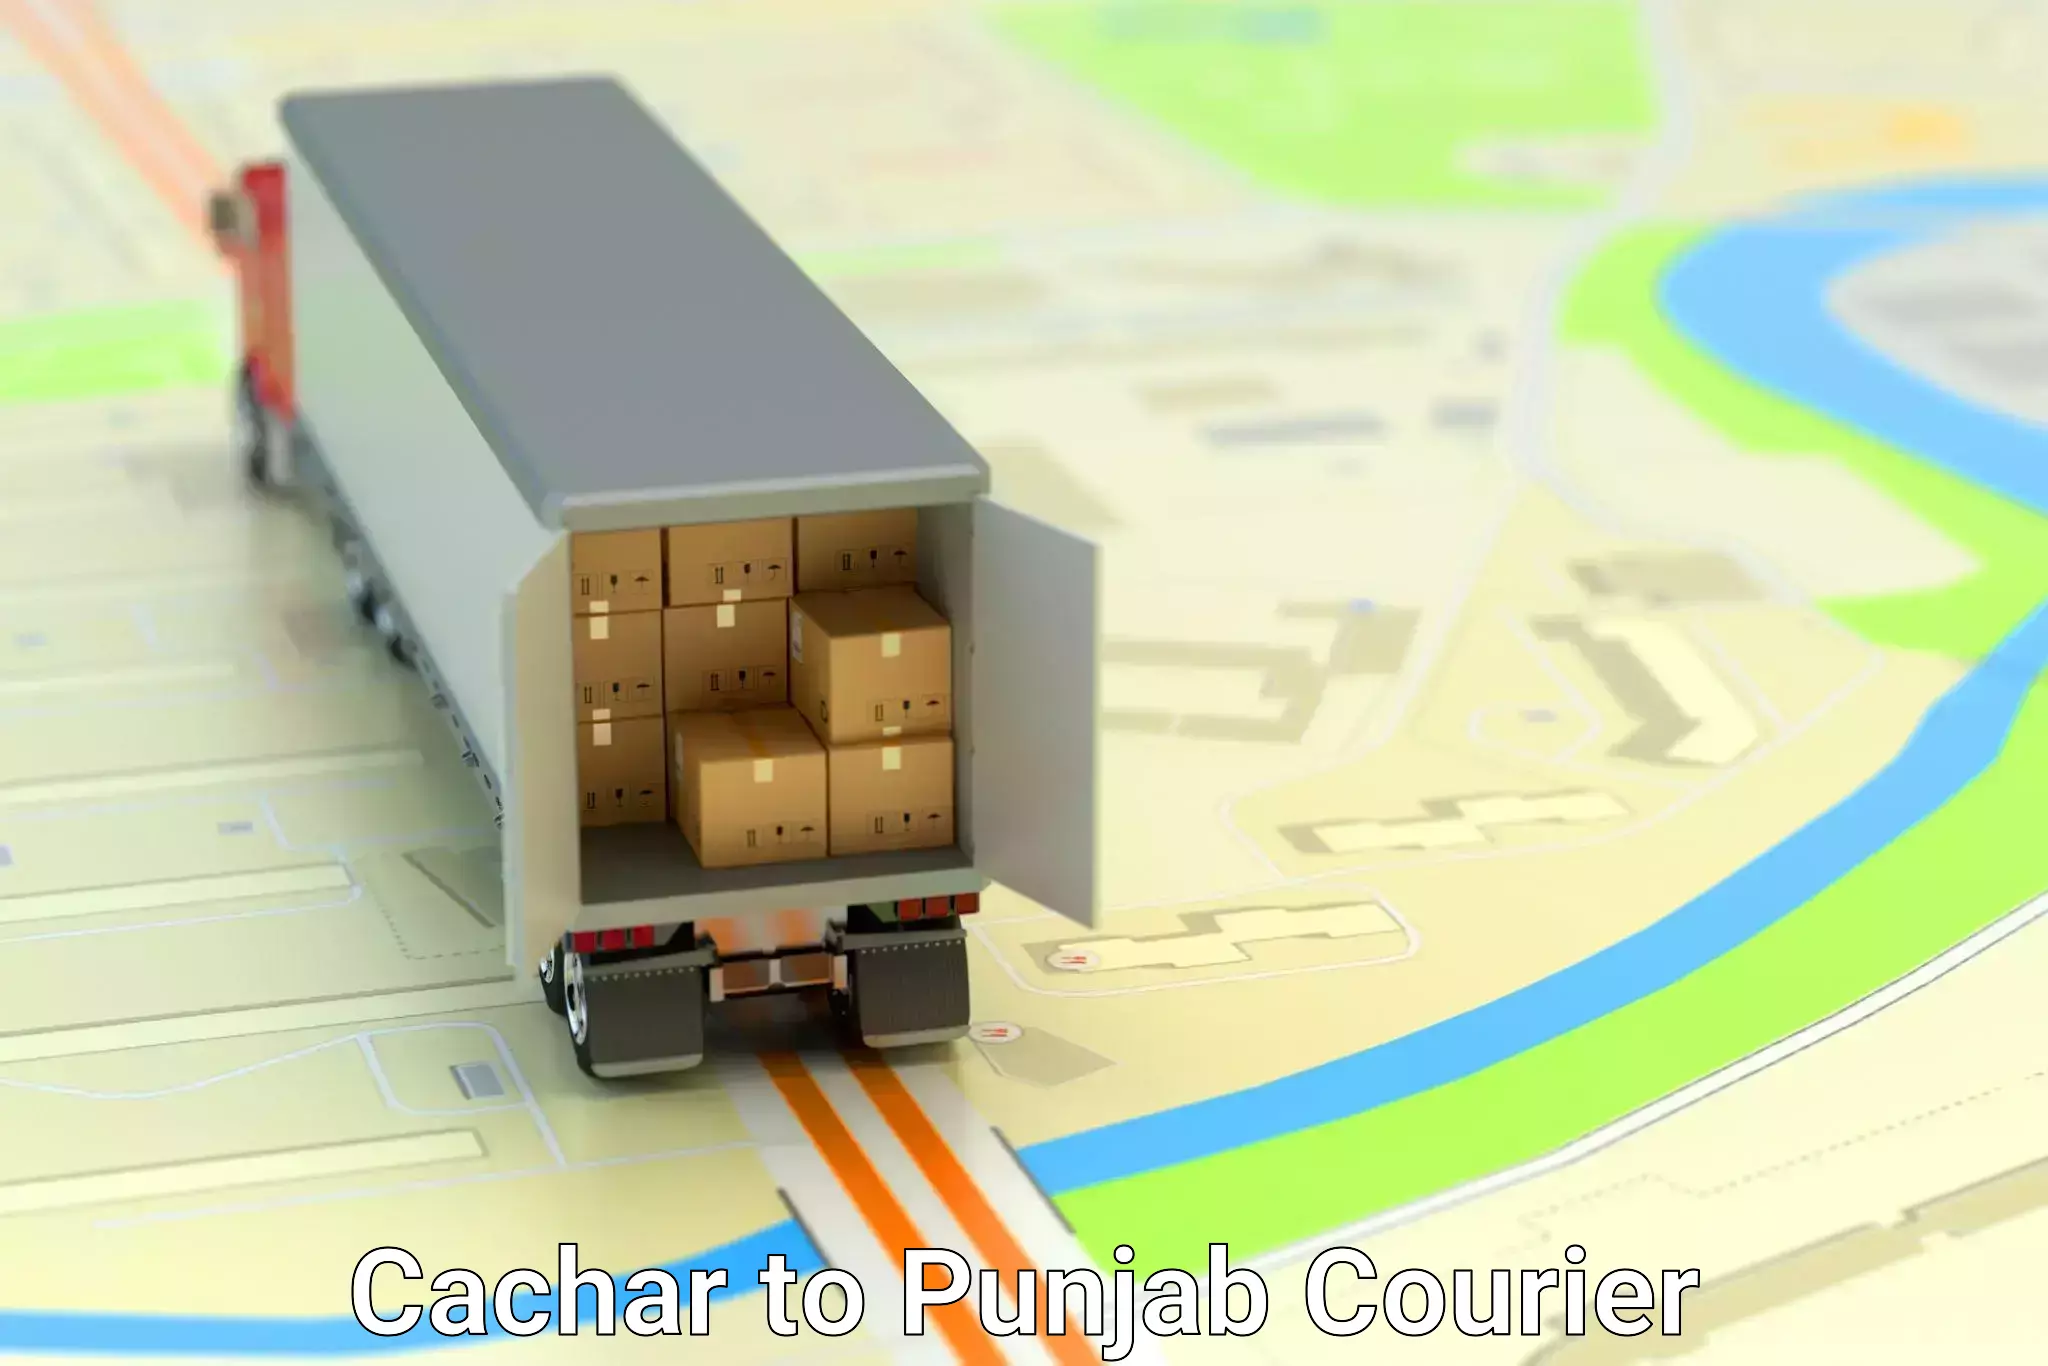 Efficient parcel service Cachar to Dhuri